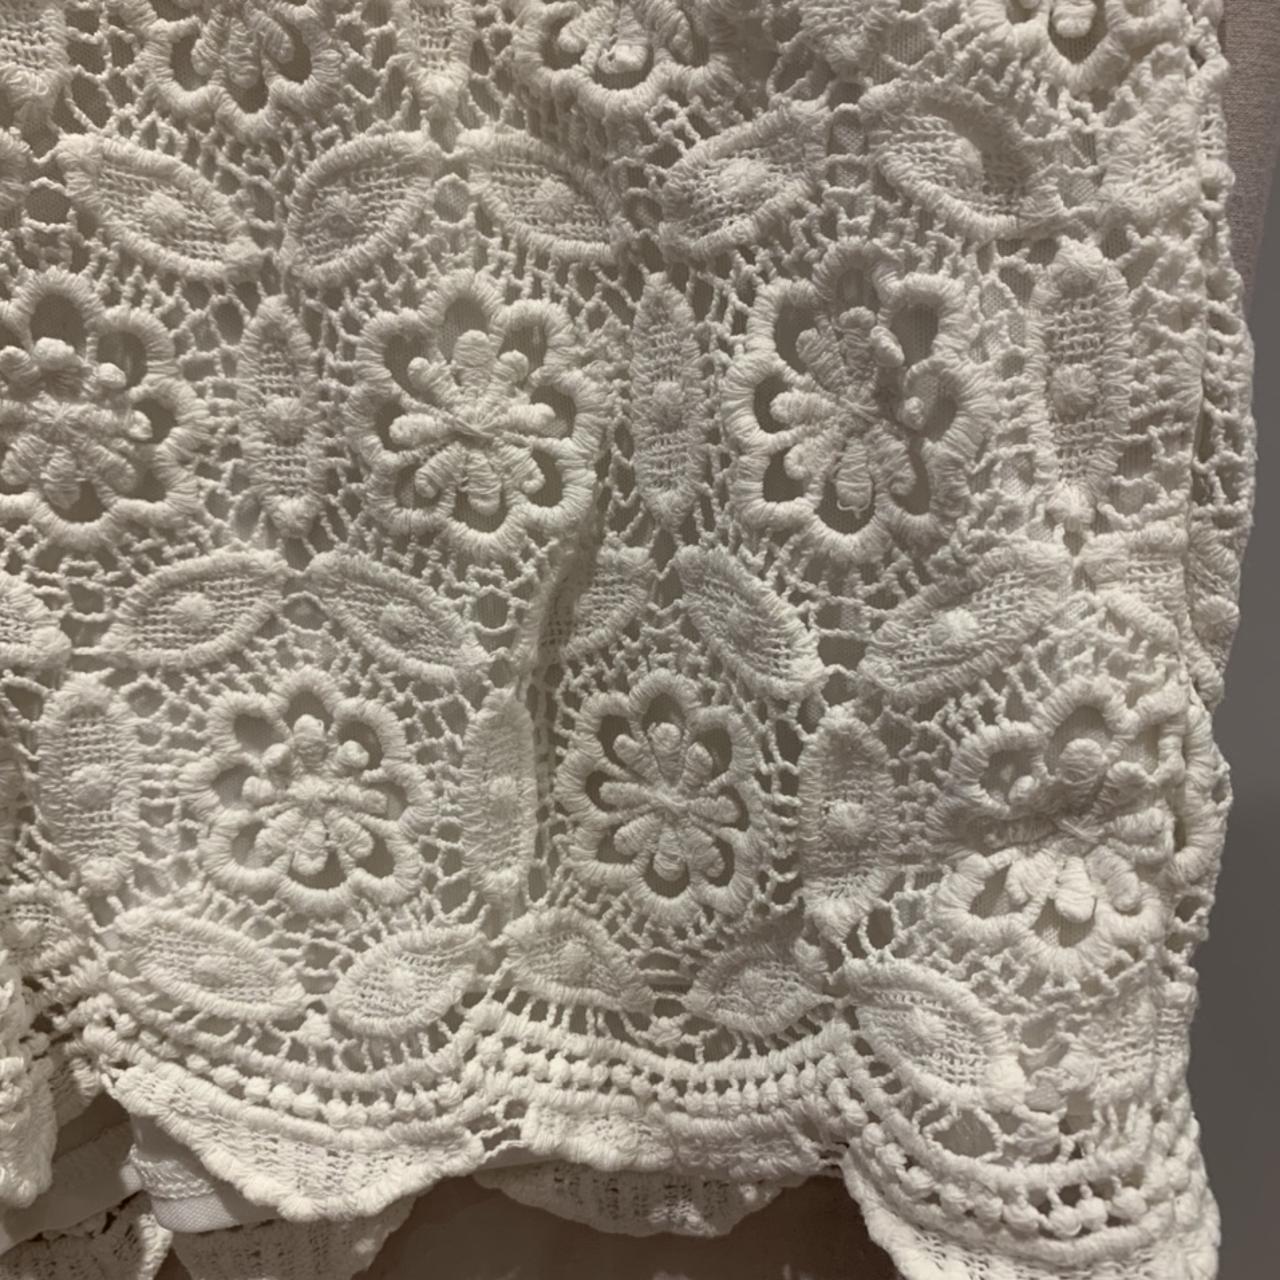 White New Look crochet shorts, size 6, worn a few... - Depop